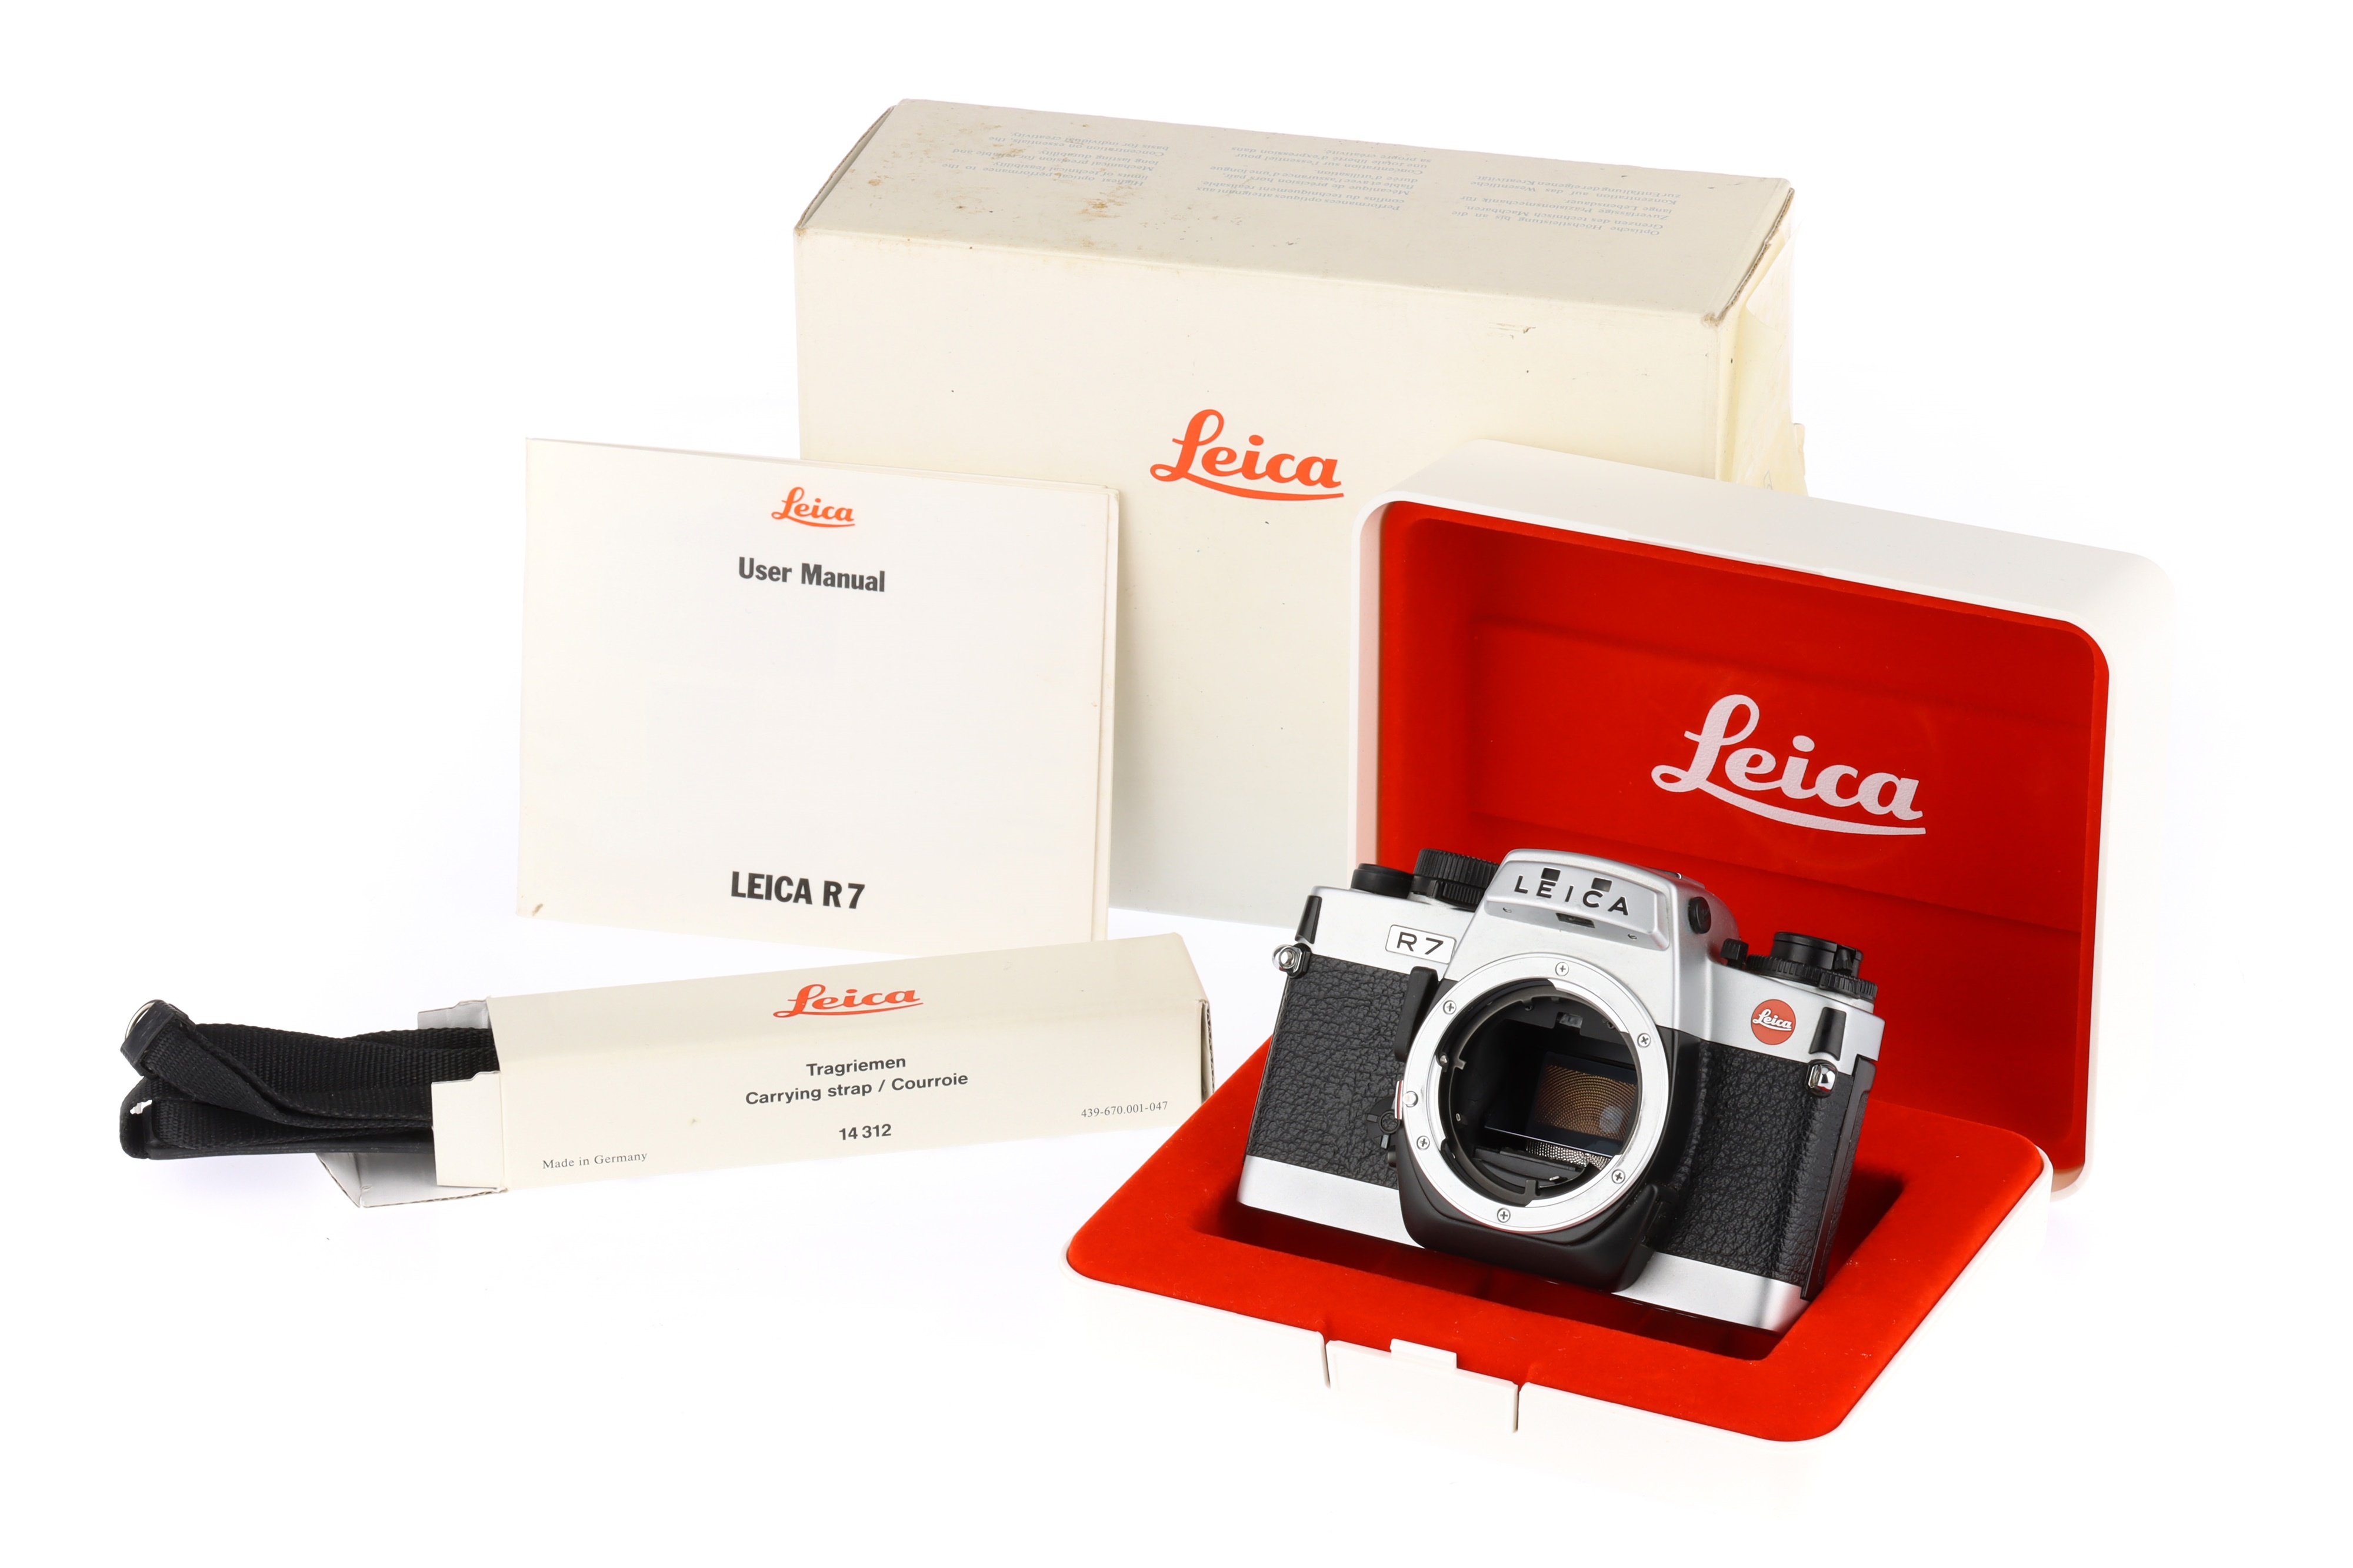 A Leica R7 35mm SLR Camera Body